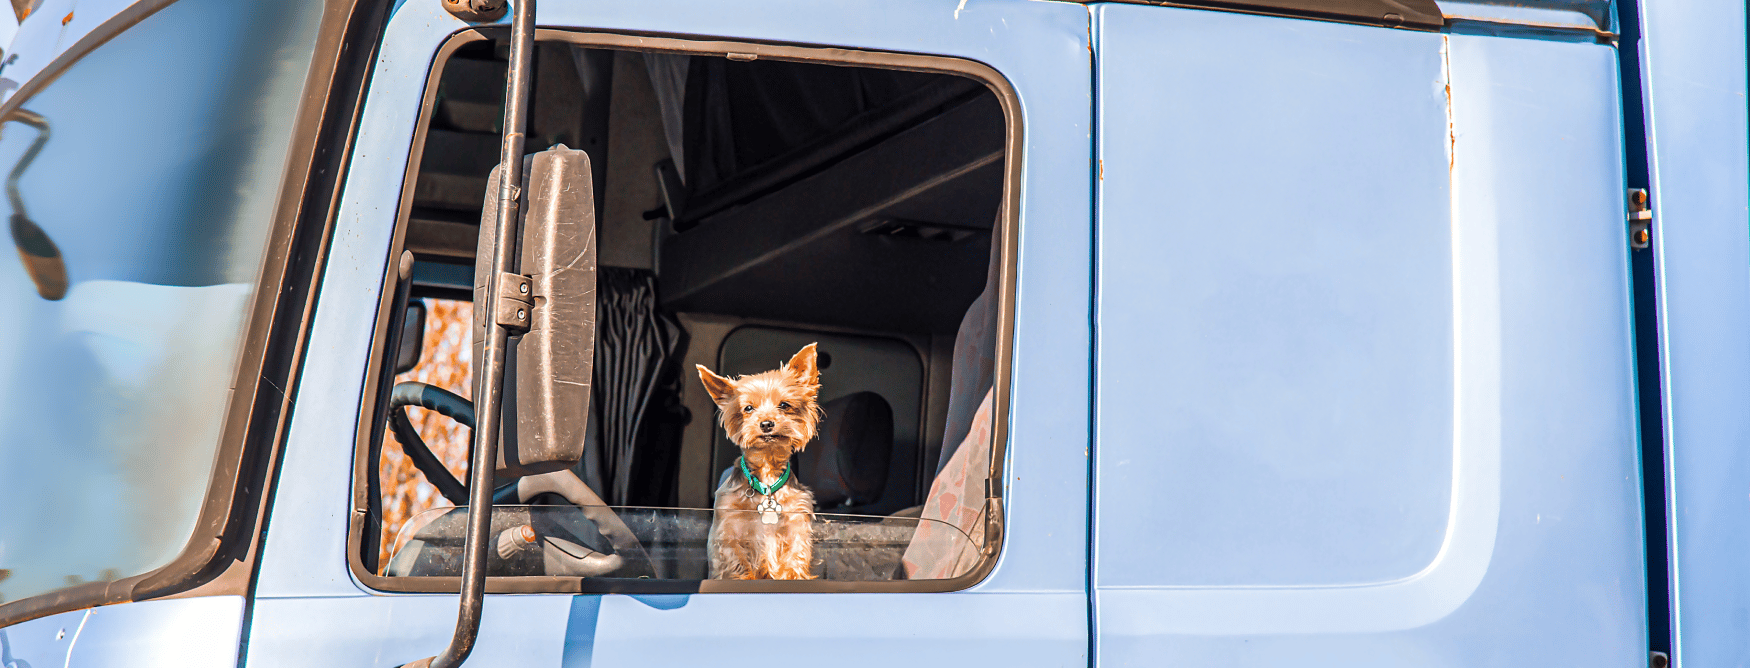 dog in a semi truck